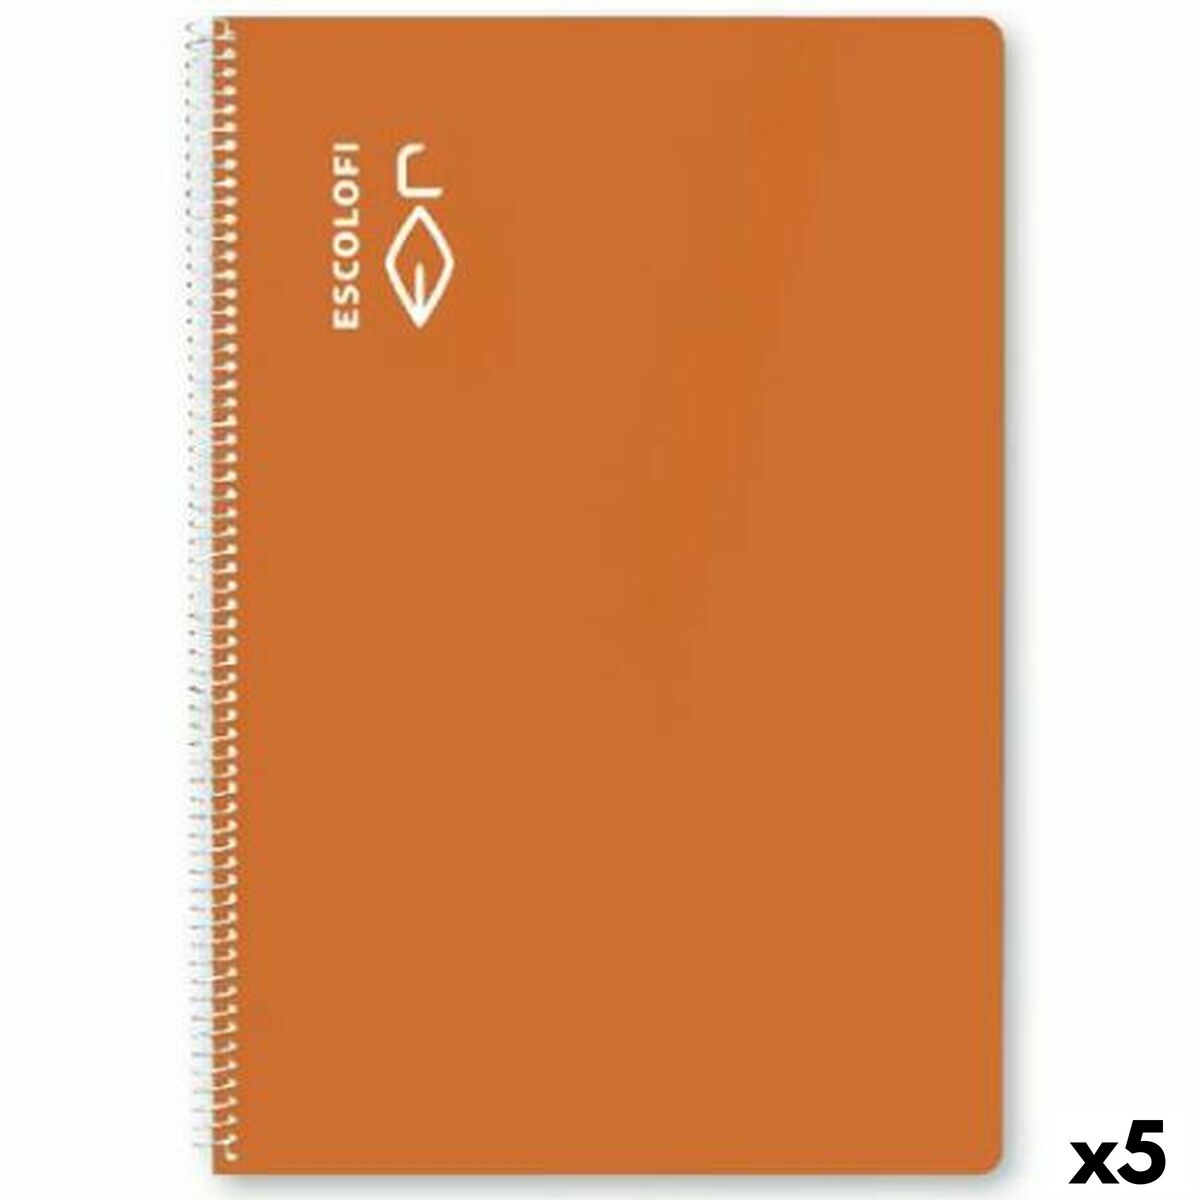 Cahier ESCOLOFI Orange Din A4 50 Volets (5 Unités)